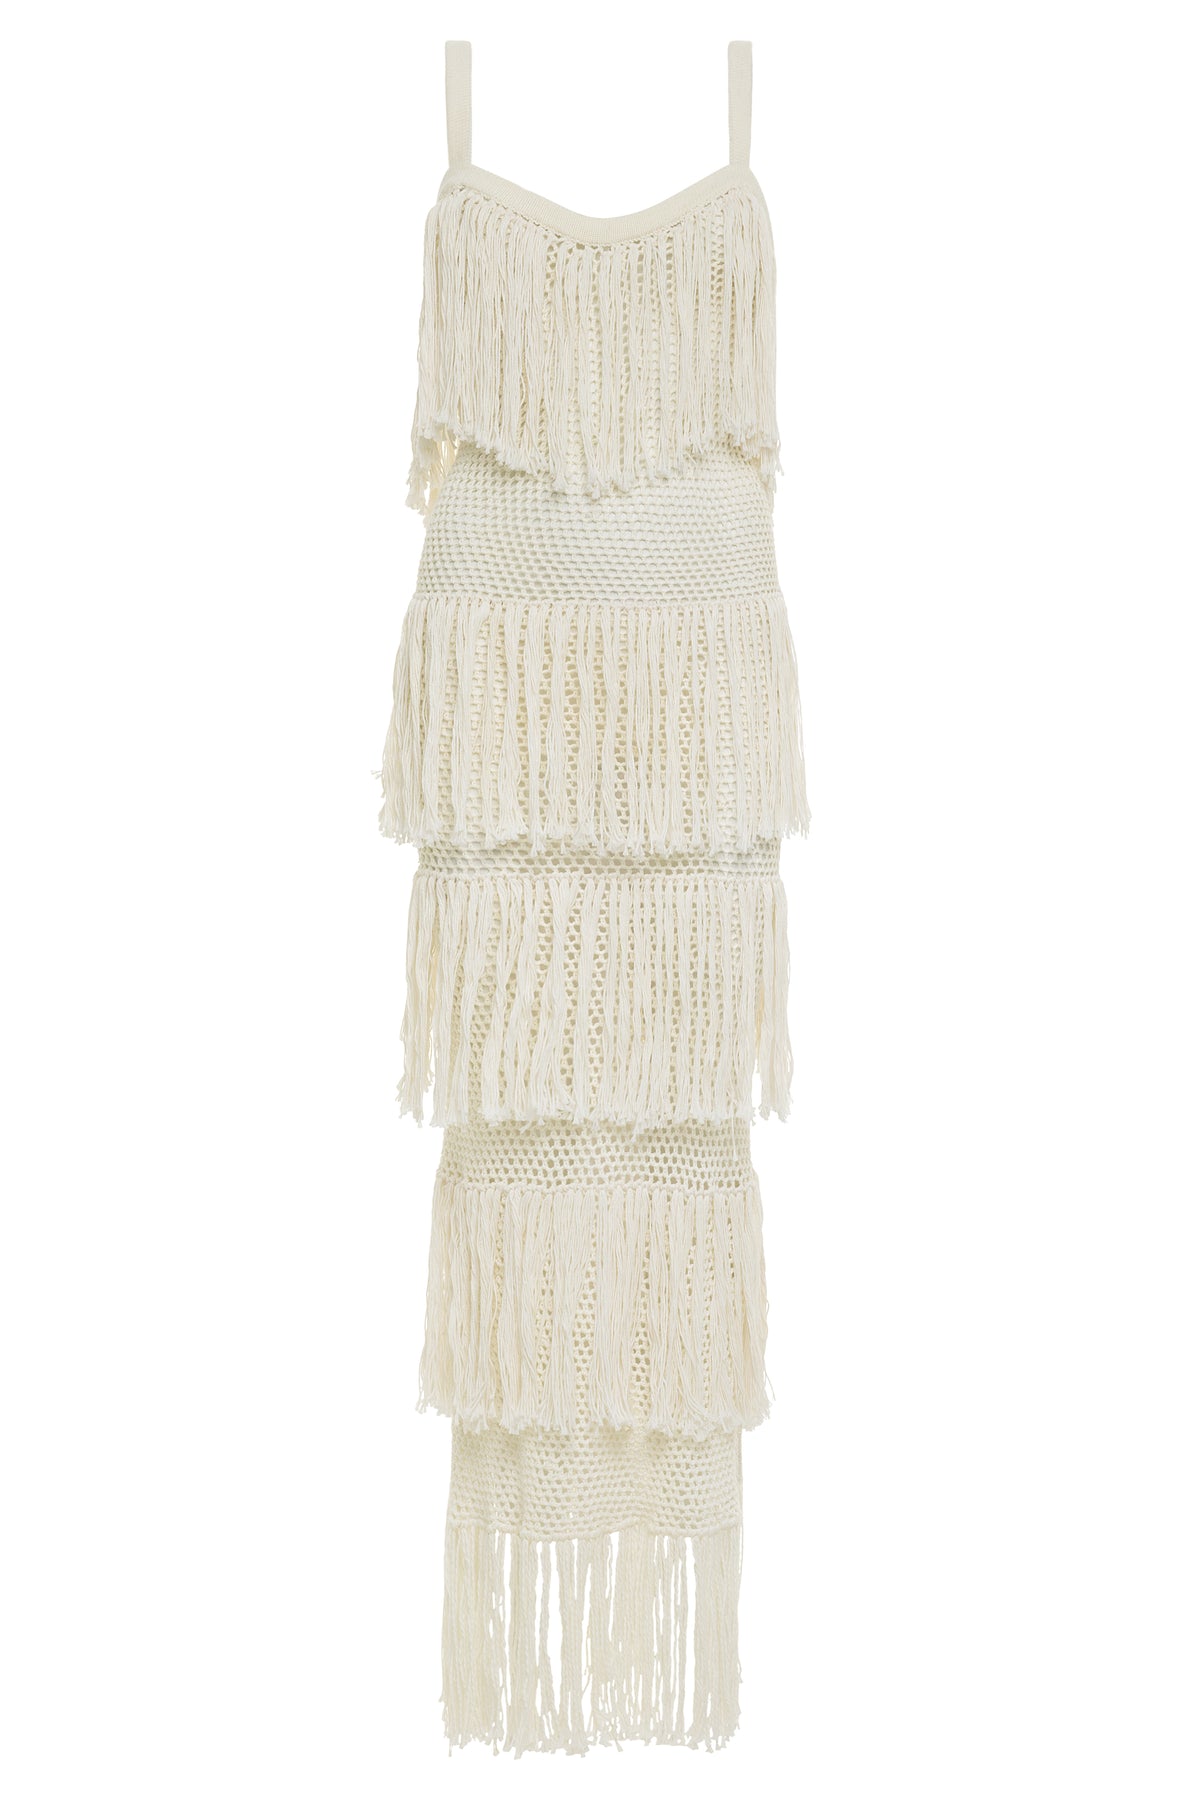 Alina Crochet Dress - Carolina K